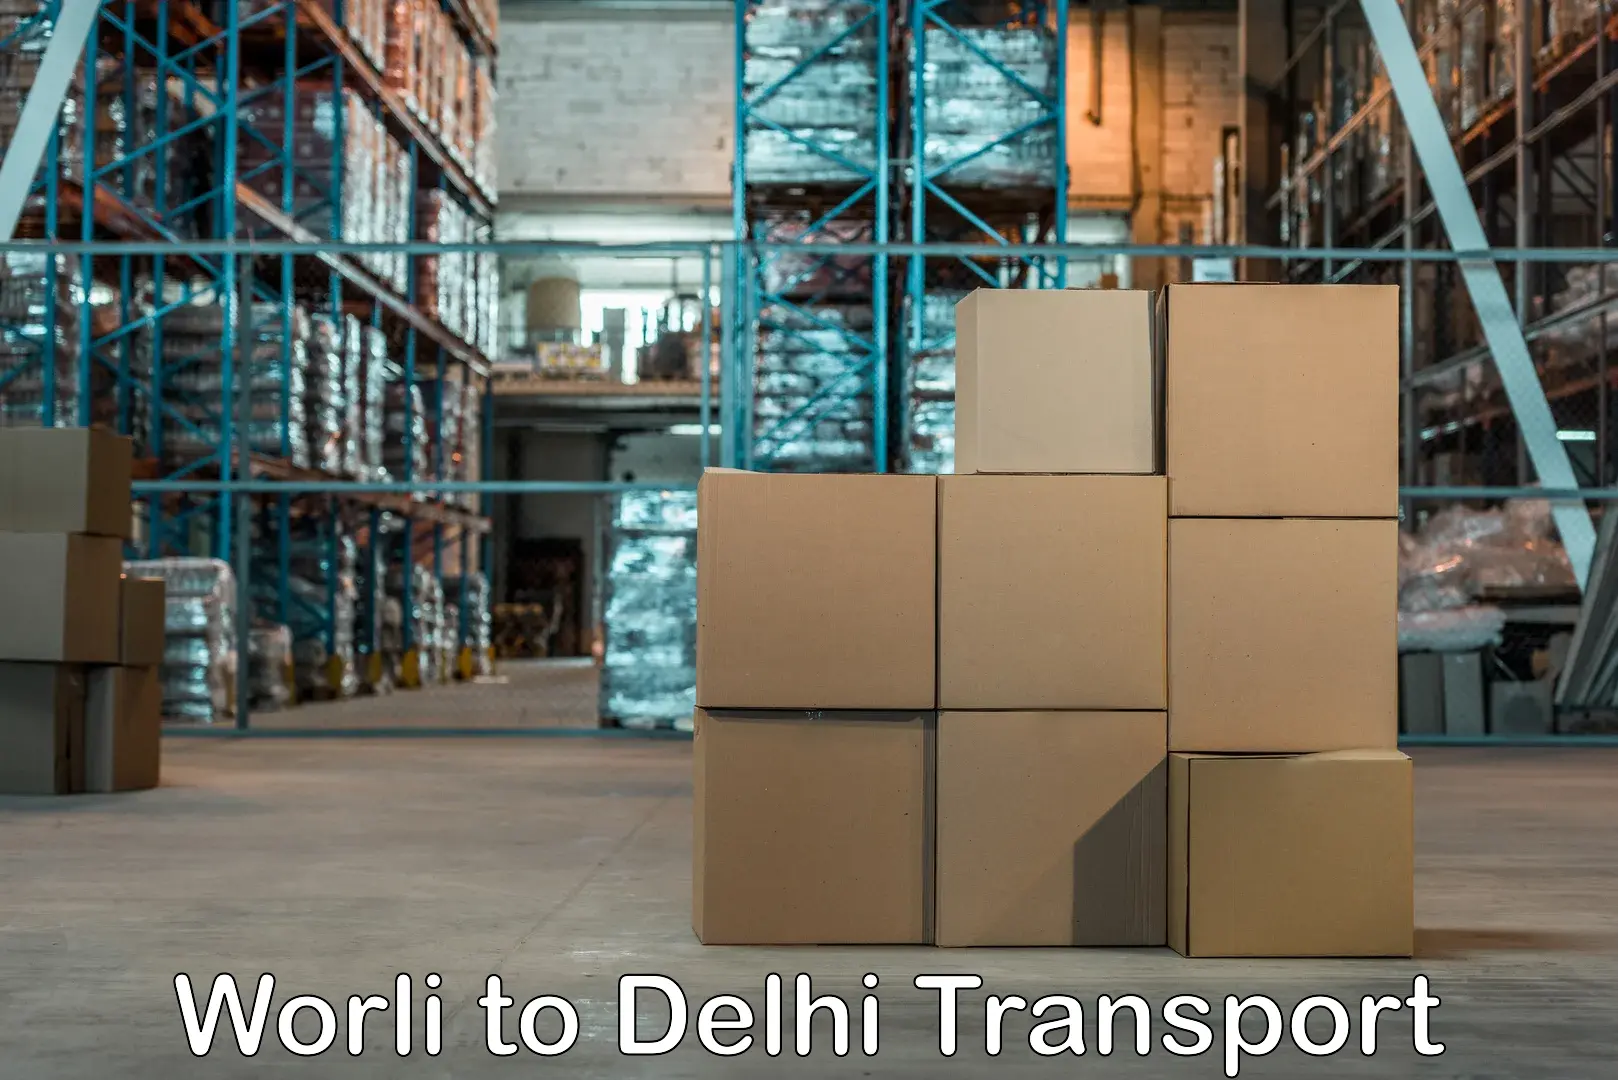 Daily transport service Worli to University of Delhi